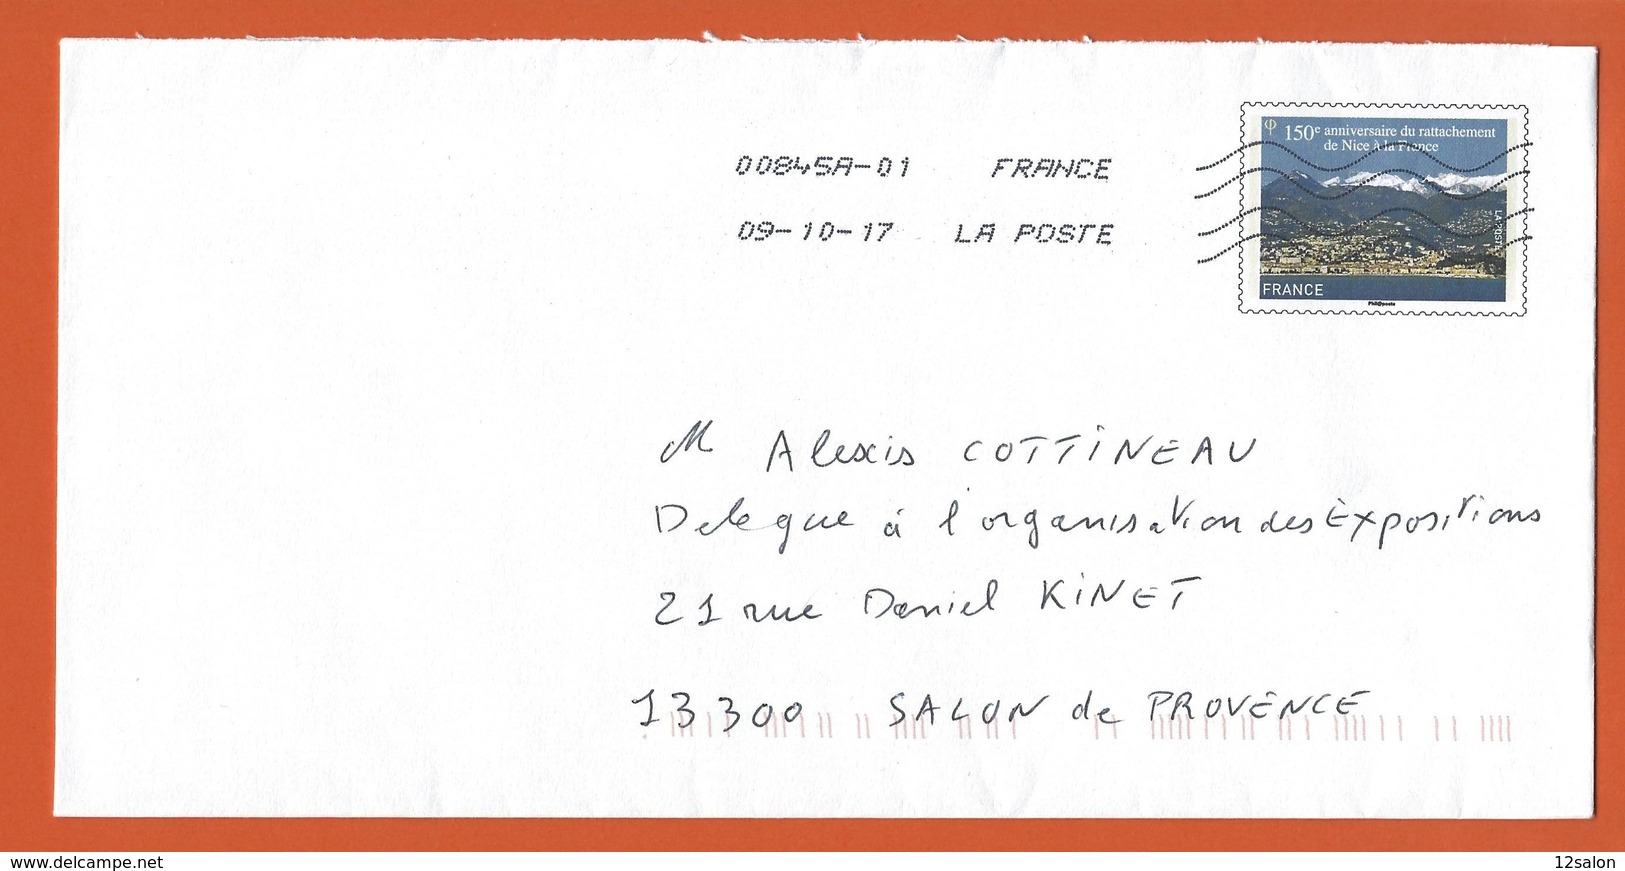 ENTIERS POSTAUX PRET A POSTER  Theme 150 ANNIVERSAIRE RATTACHEMENT DE NICE A LA FRANCE - PAP : Altri (1995-...)